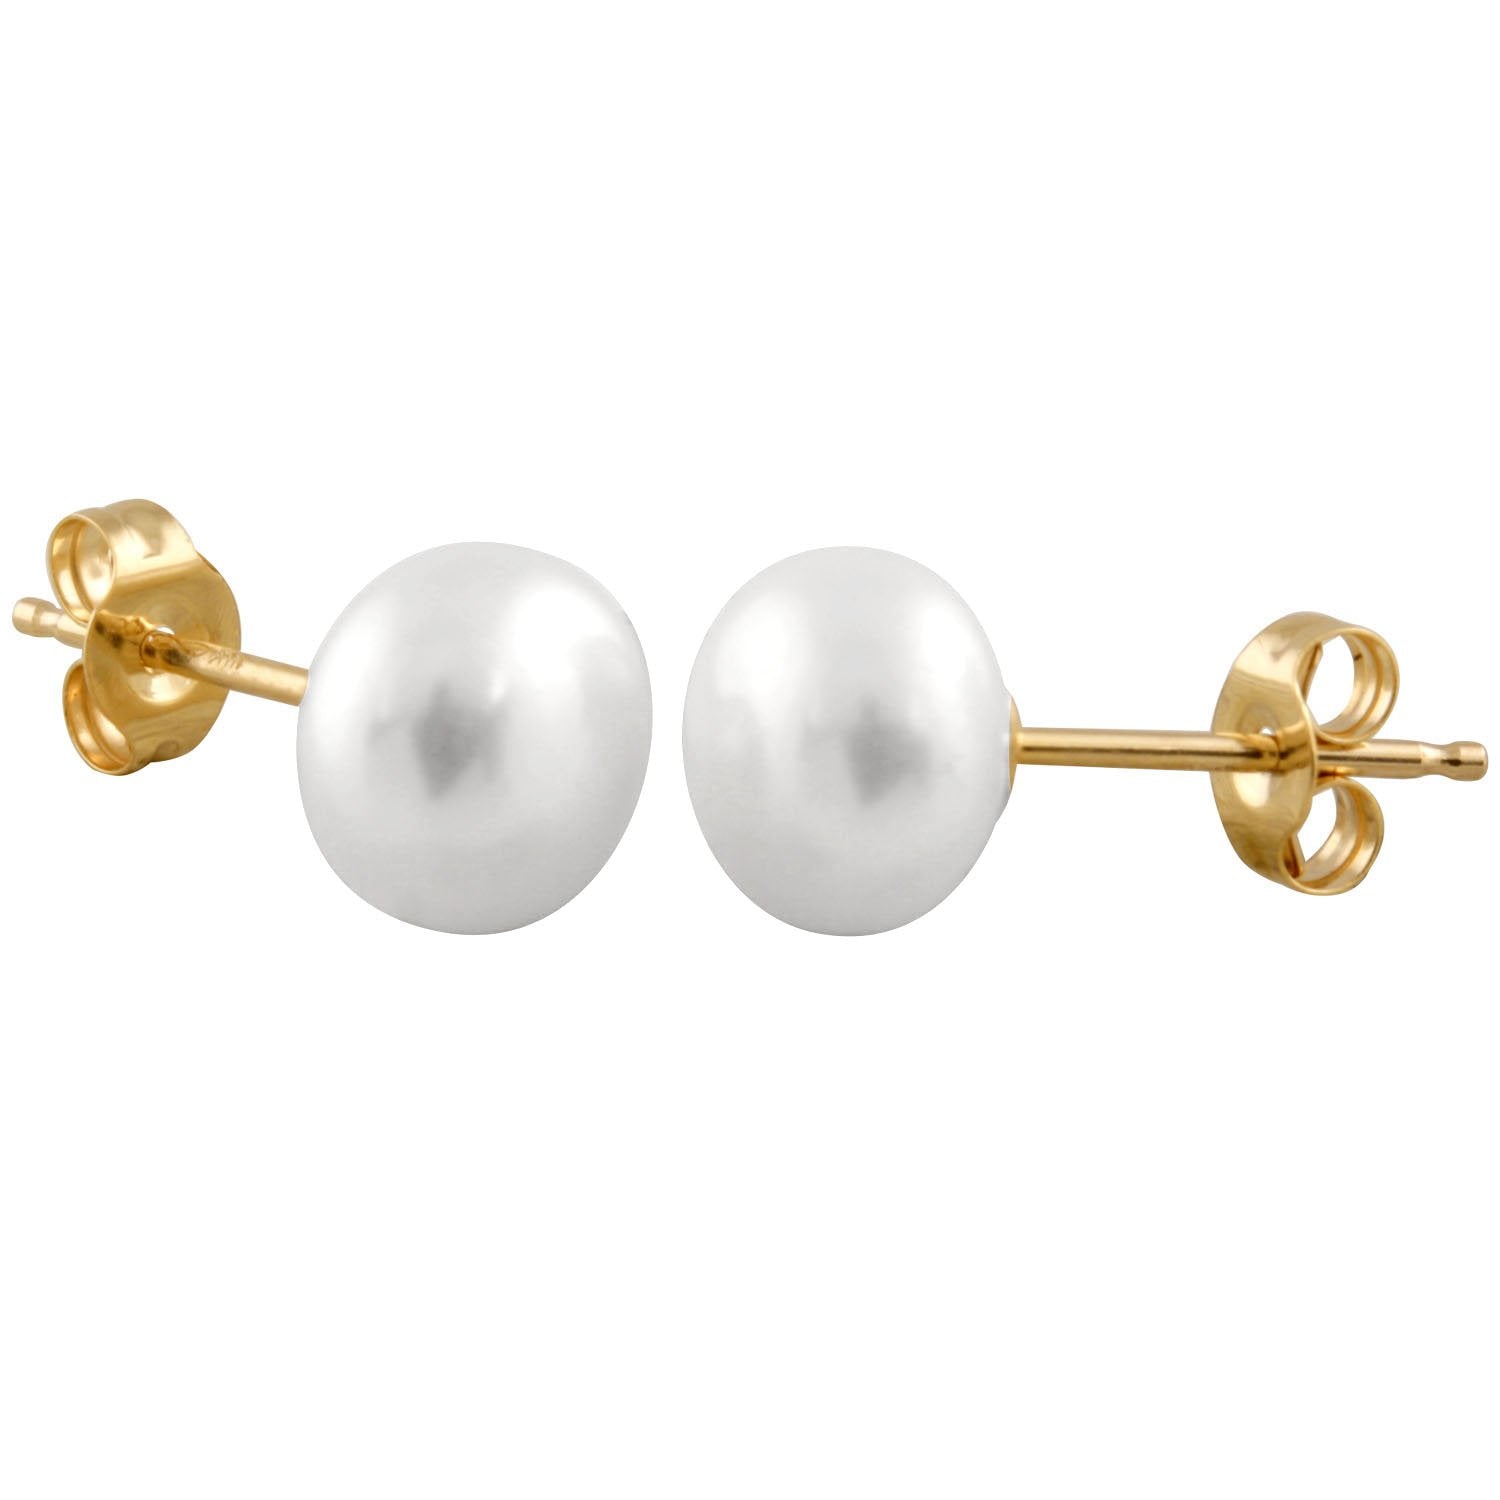 Lustuous 6mm White Pearl Stud Earrings